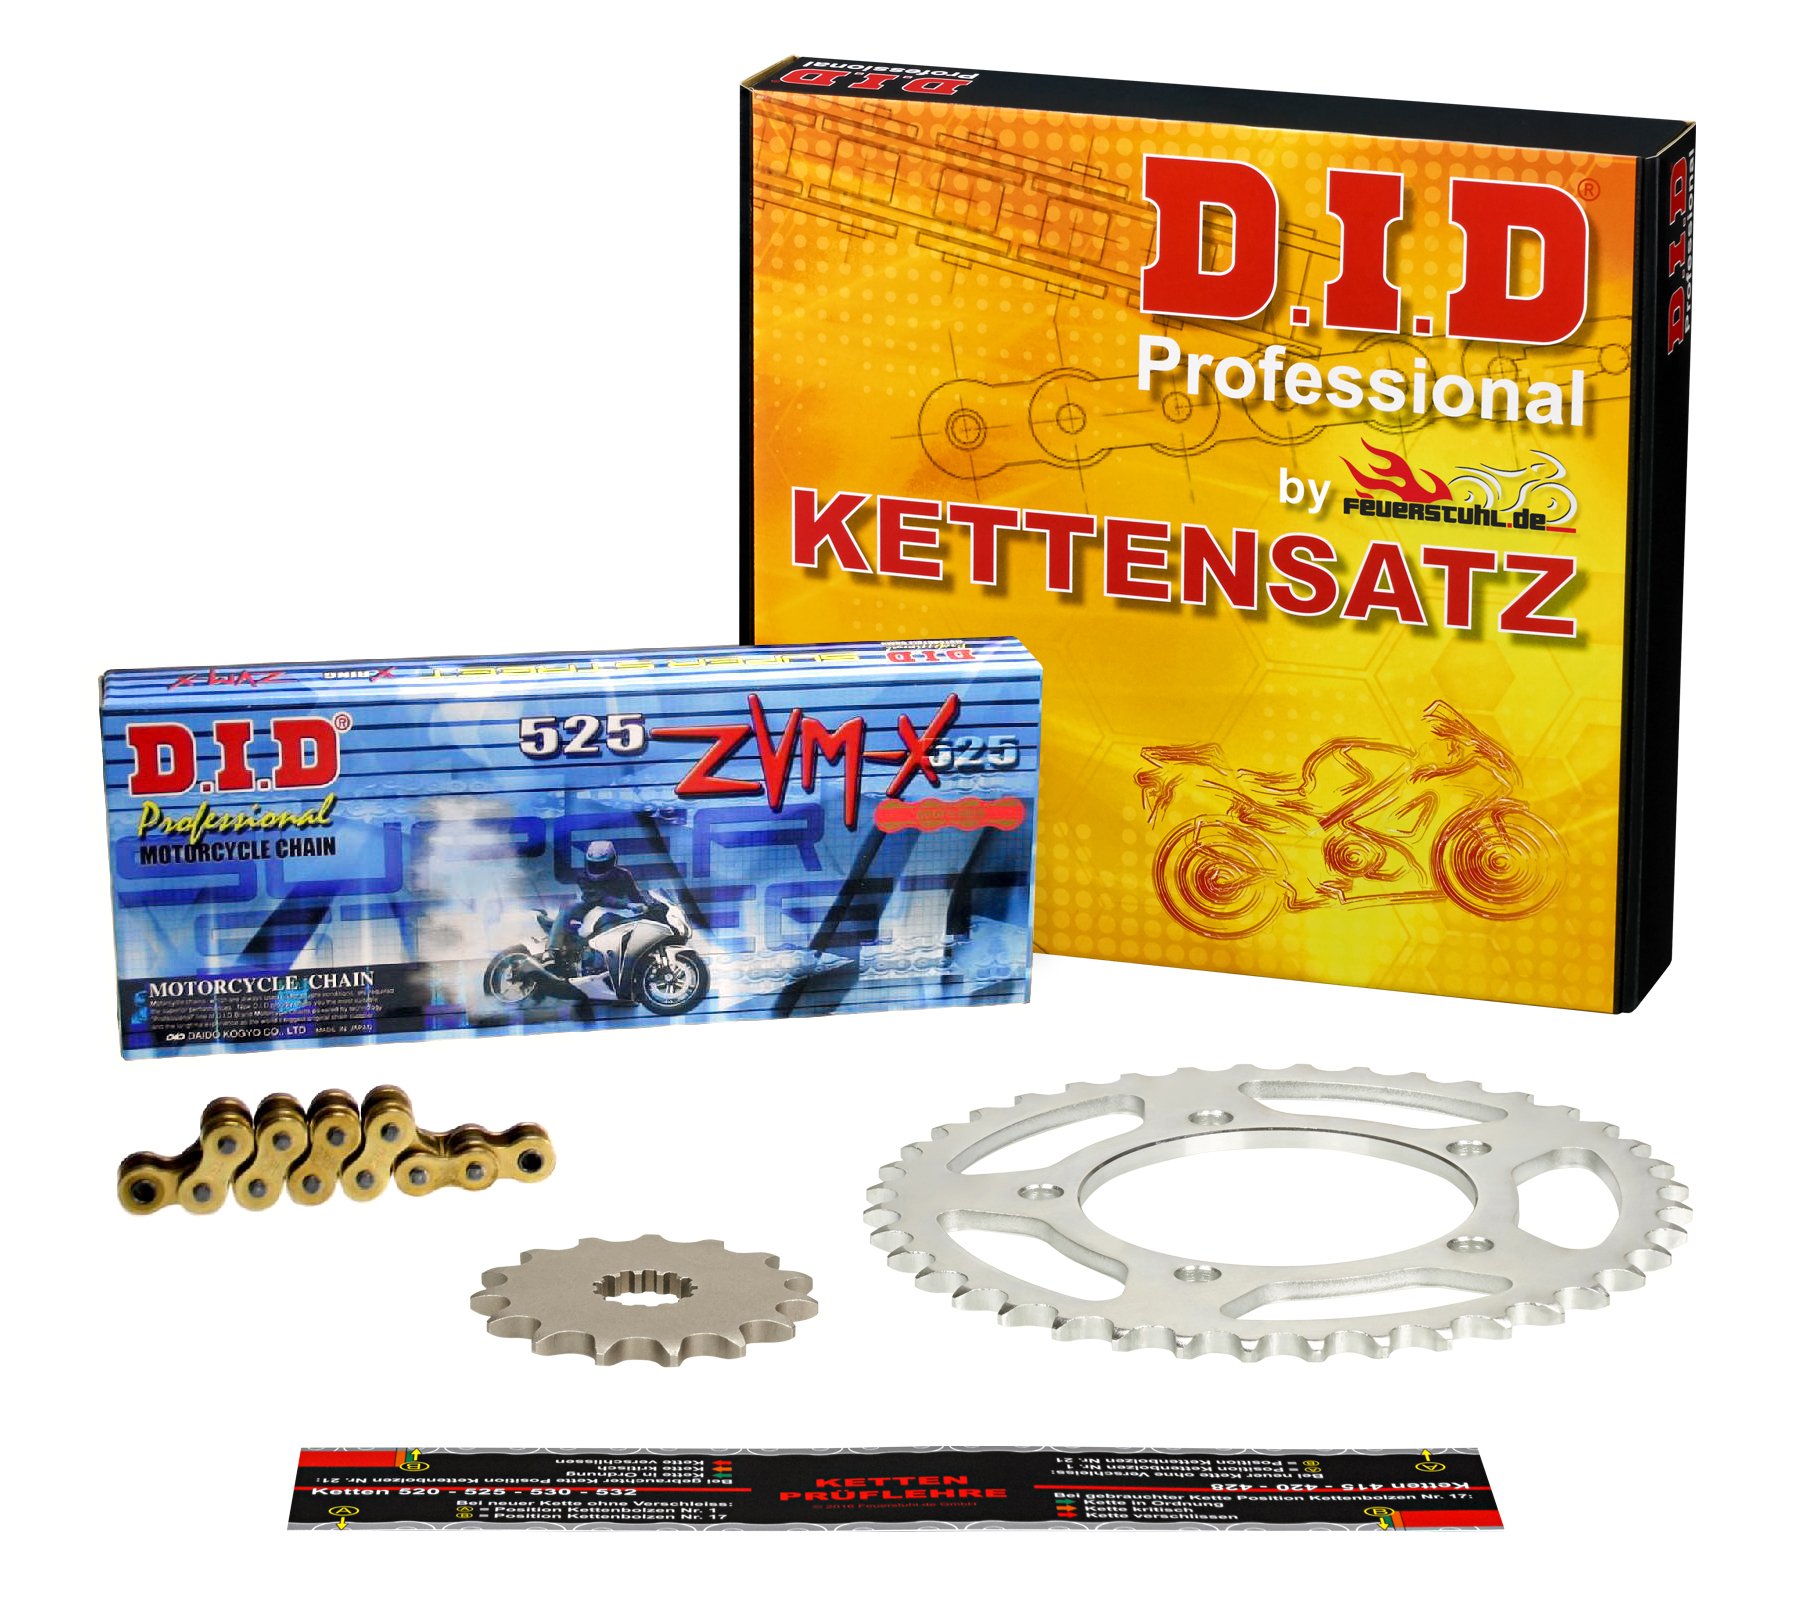 Kettensatz Kawasaki ZX-10R, 2008-2010, Typ ZXT00E, ZXT00F, DID X-Ring (ZVM-X gold) super verstärkt von Feuerstuhl.de GmbH